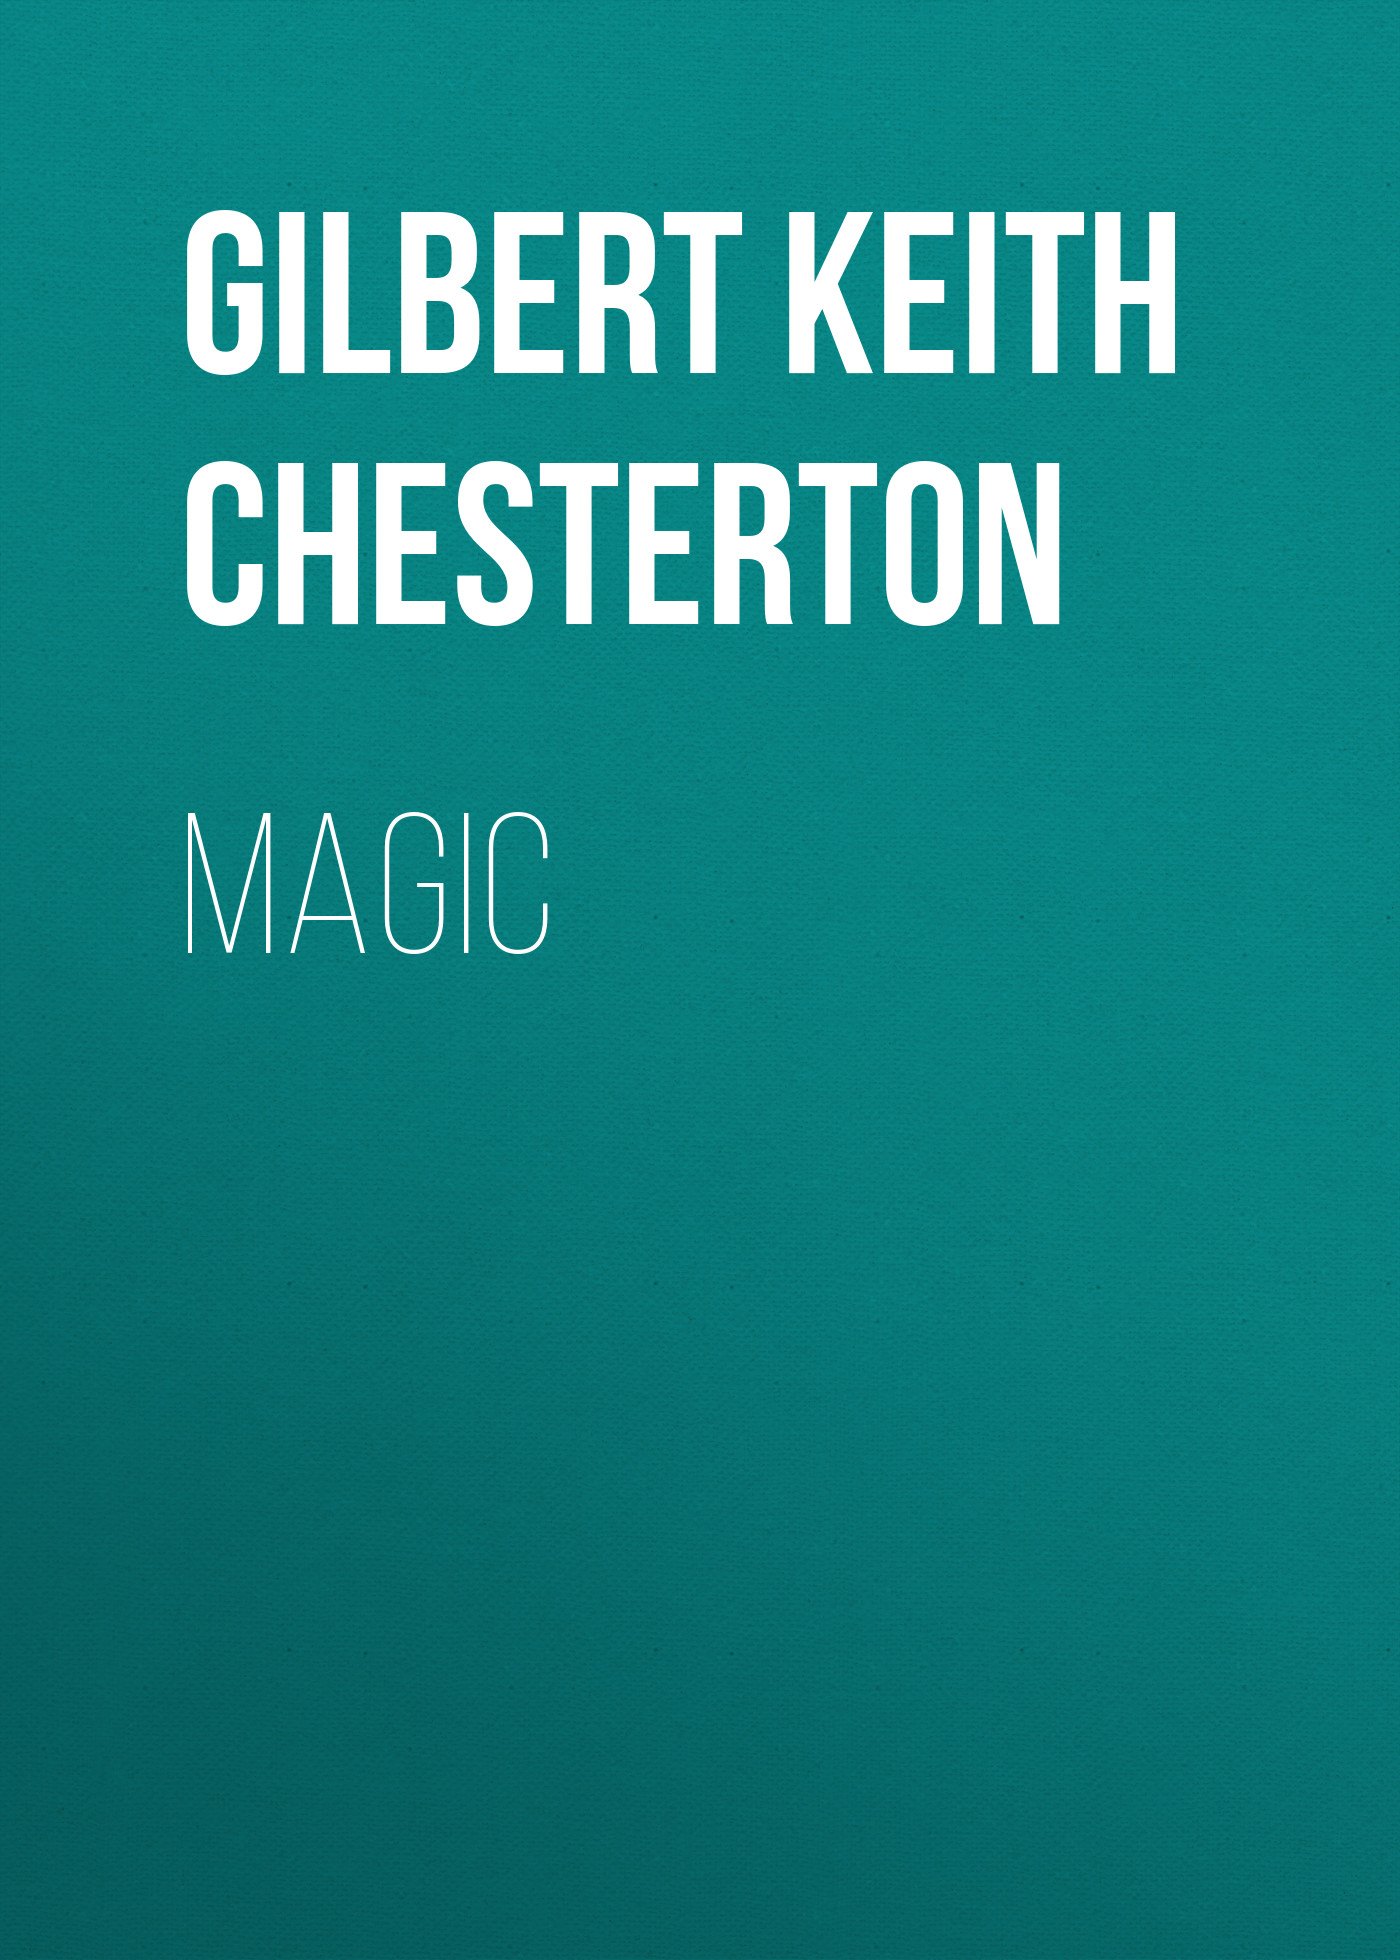 Книга Magic из серии , созданная Gilbert Chesterton, может относится к жанру Зарубежная старинная литература, Зарубежная классика. Стоимость электронной книги Magic с идентификатором 25021091 составляет 0 руб.